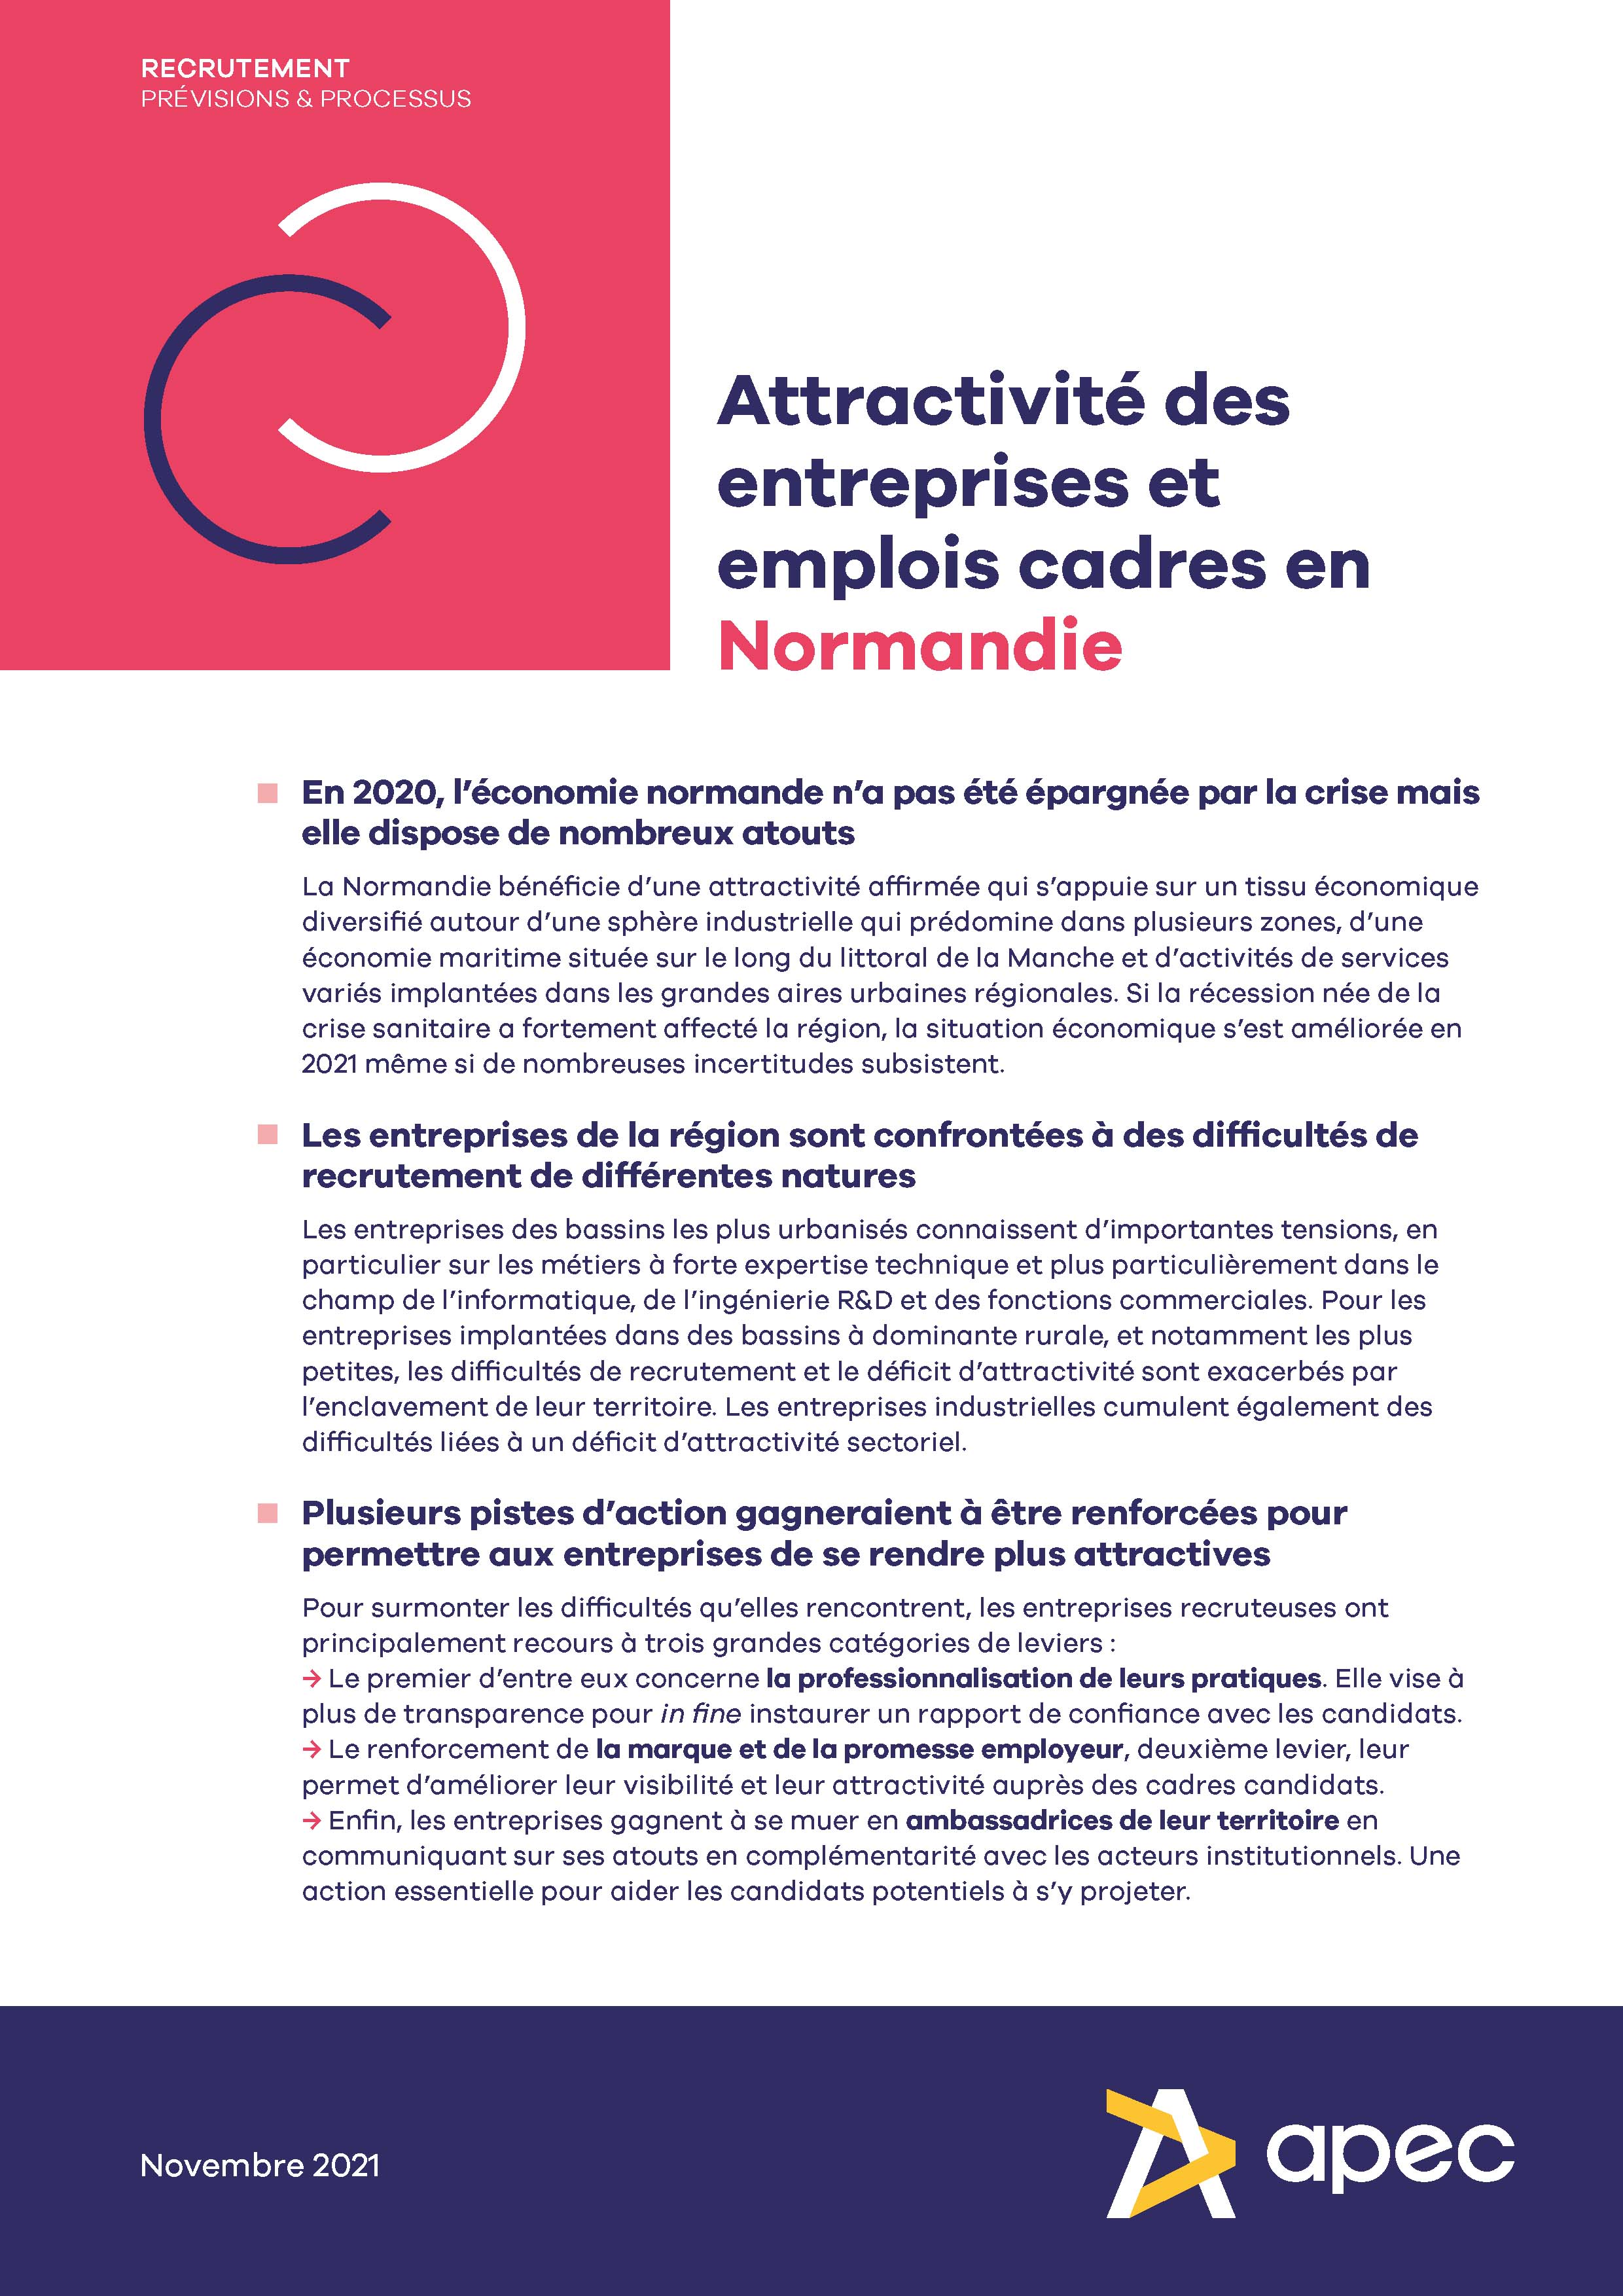 Attractivité des entreprises et emplois cadres en Normandie